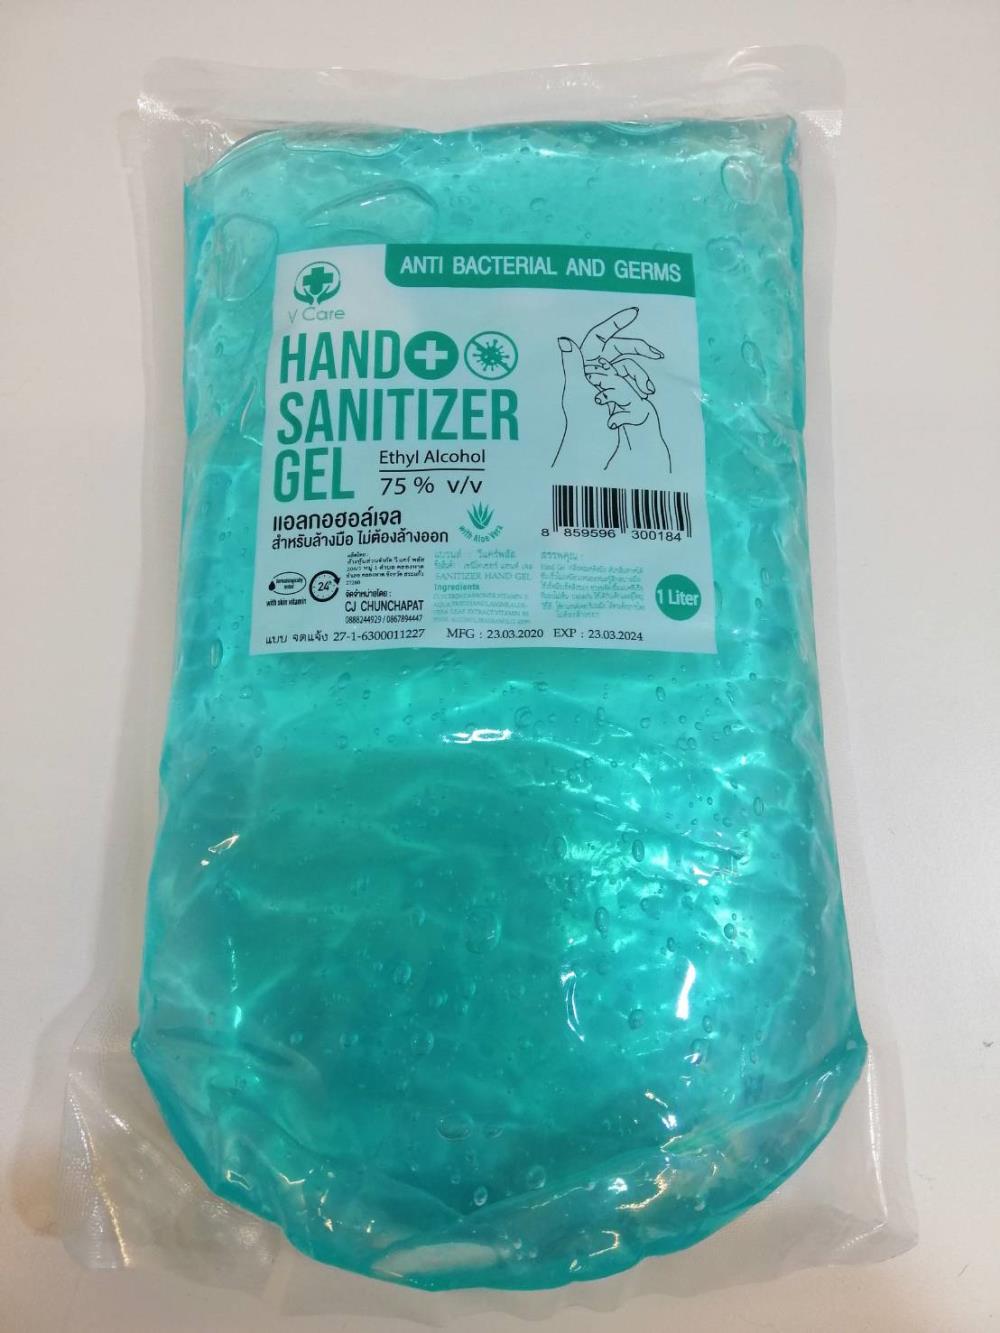 V Care Hand Sanitizer Gel (Ethyl Alcohol 75% V/V),Hand Sanitizer Gel (Ethyl Alcohol 75% V/V),V CARE,Chemicals/Alcohols